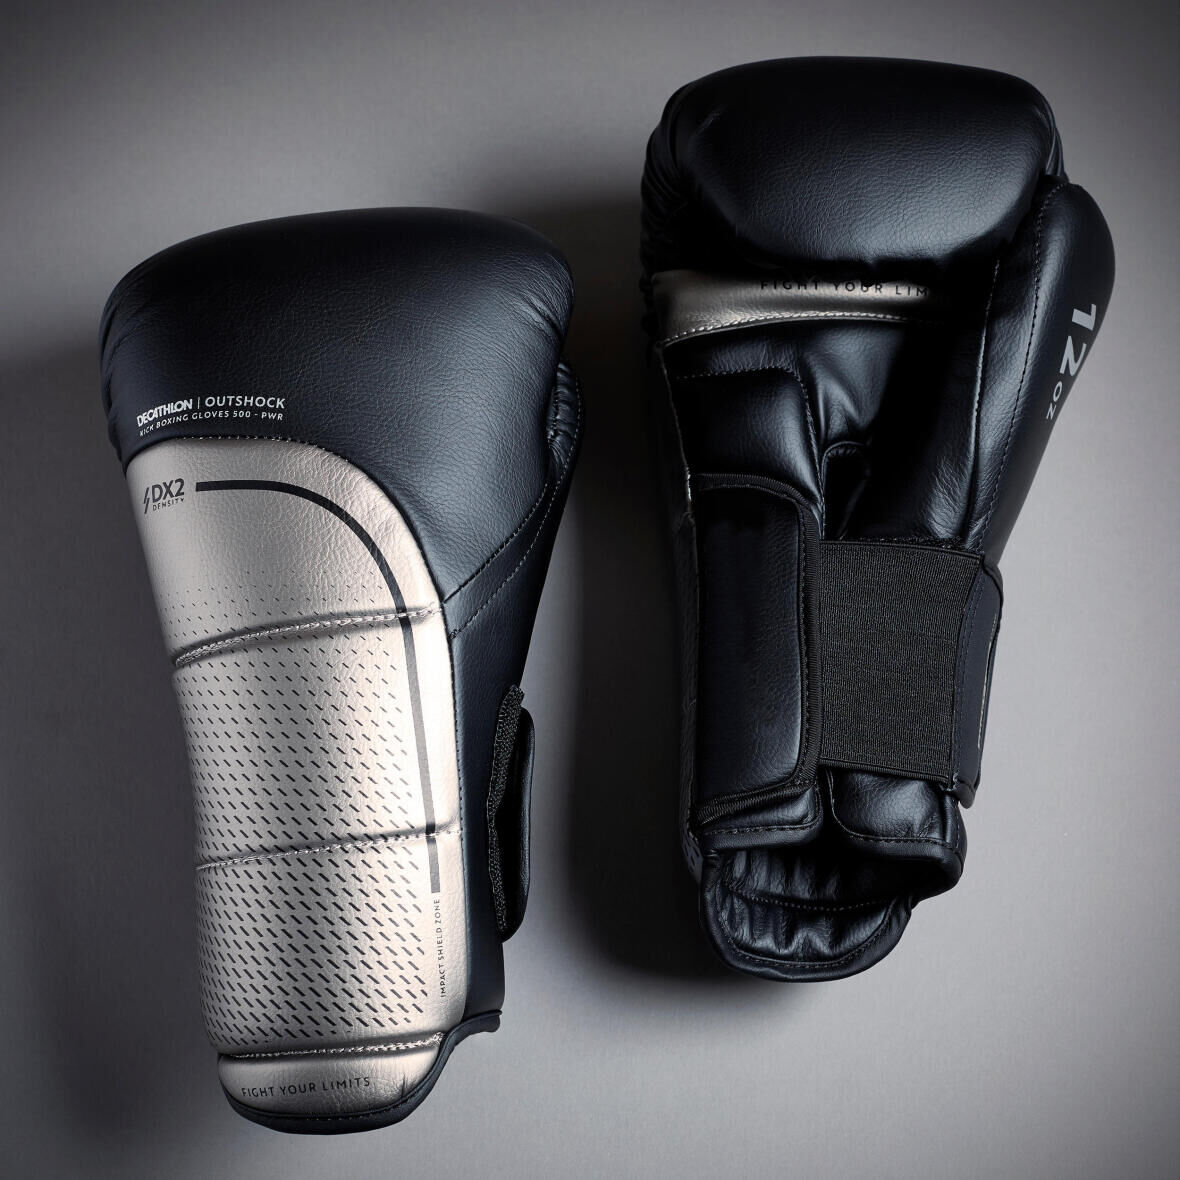 Kickboxing gloves